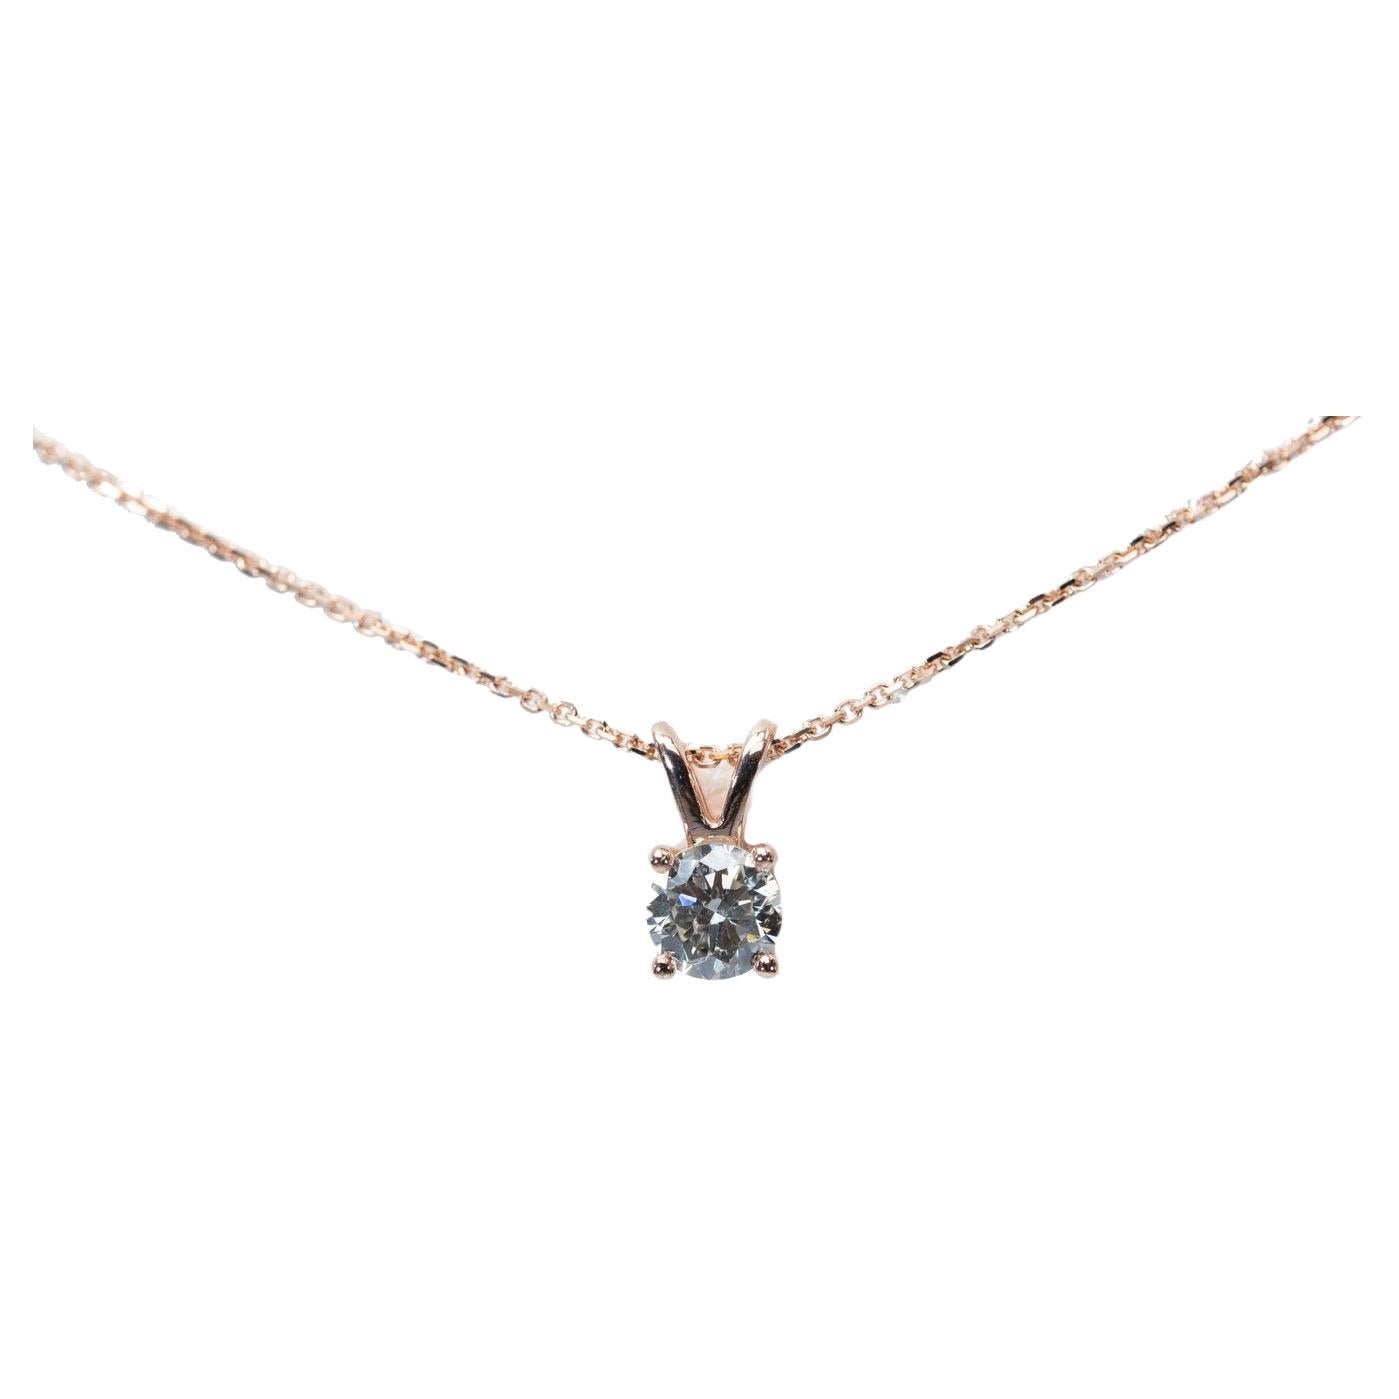 Wunderschöne Halskette und Anhänger aus 18 Karat Roségold mit 0,8 Karat natürlichem Diamanten, GIA-zertifiziert